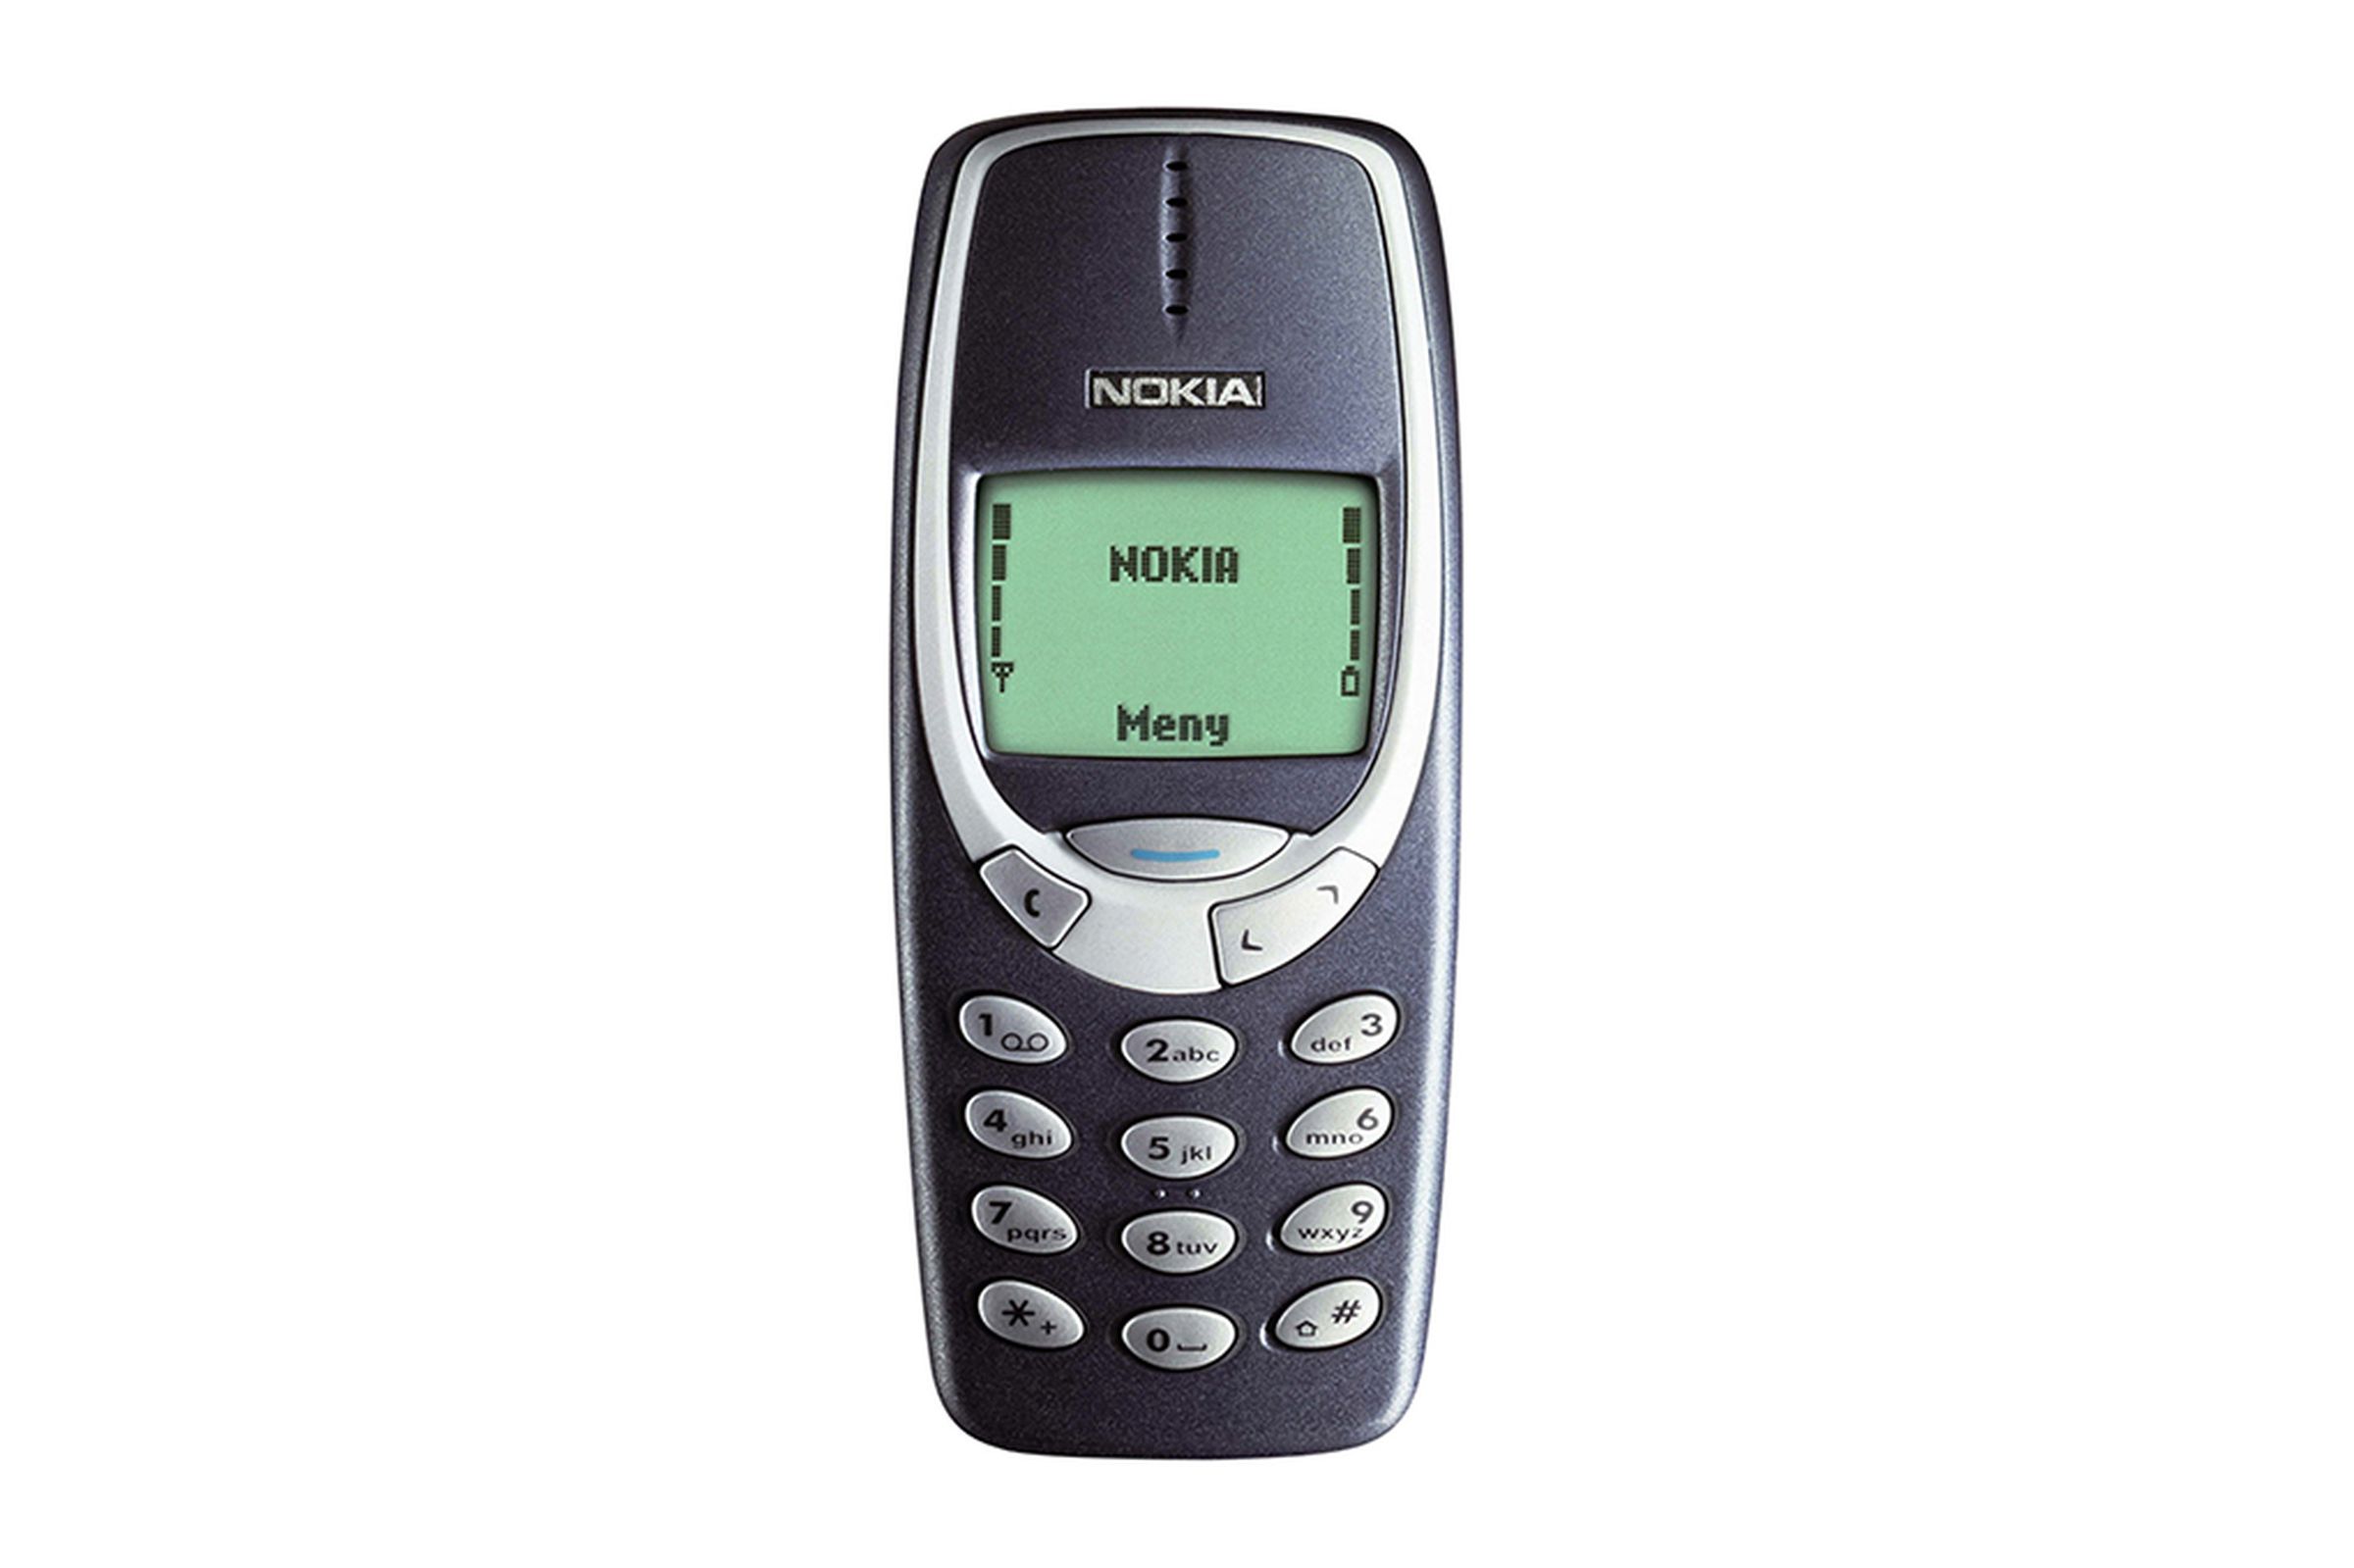 Nokia: a visual history